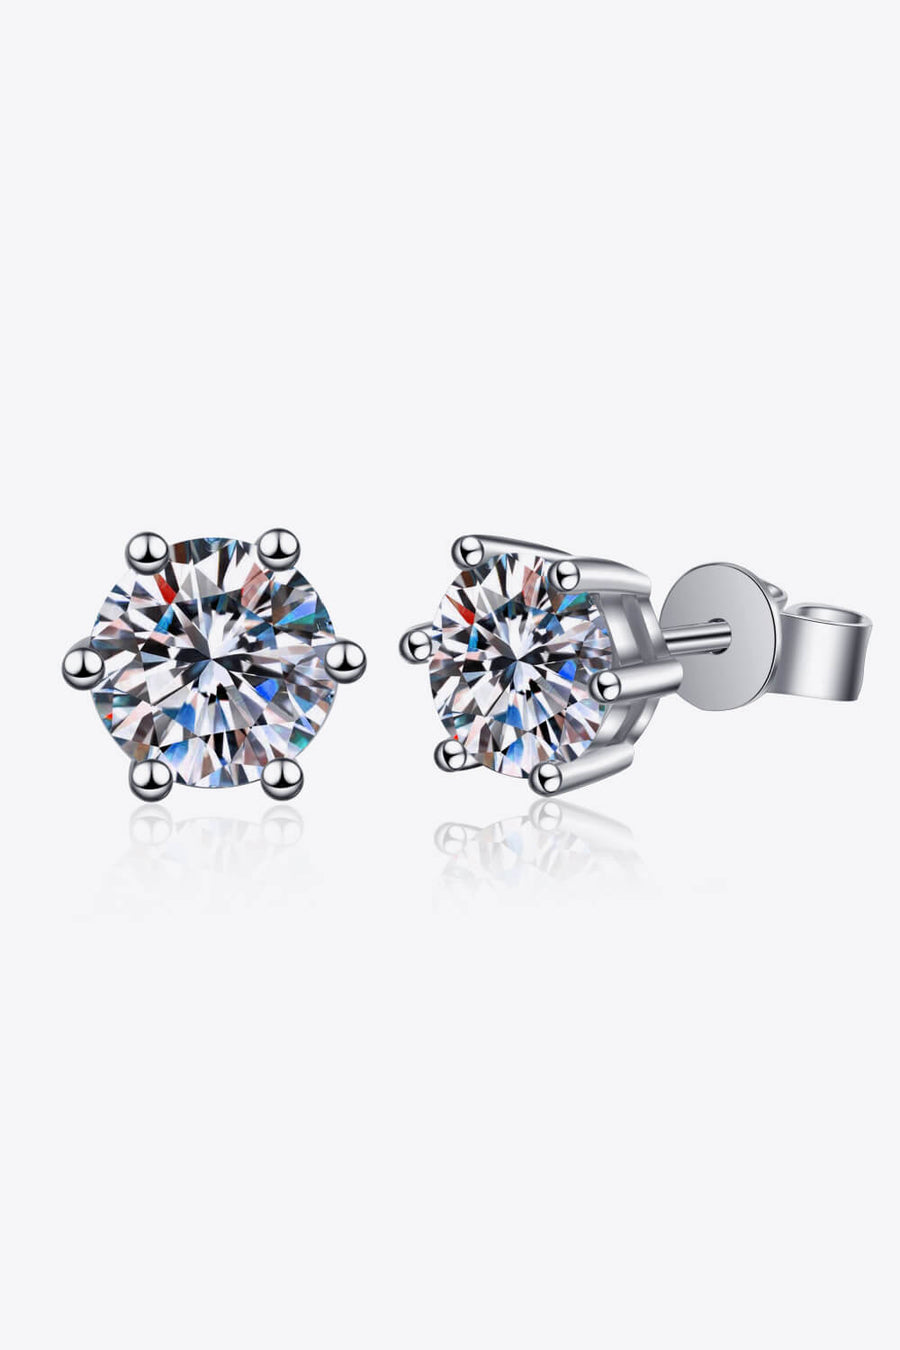 Best Diamond Earrings Jewelry Gifts for Women | 1 Carat Diamond Stud Earrings | MASON New York